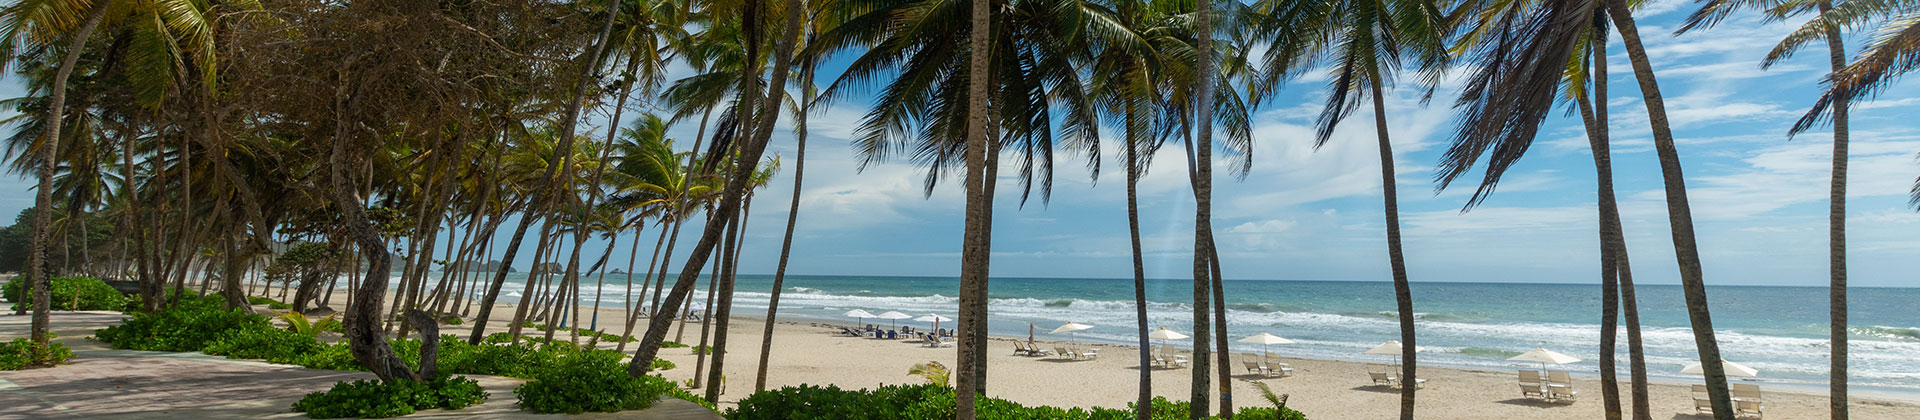 Playa tropical con palmeras, arena blanca y agua azul